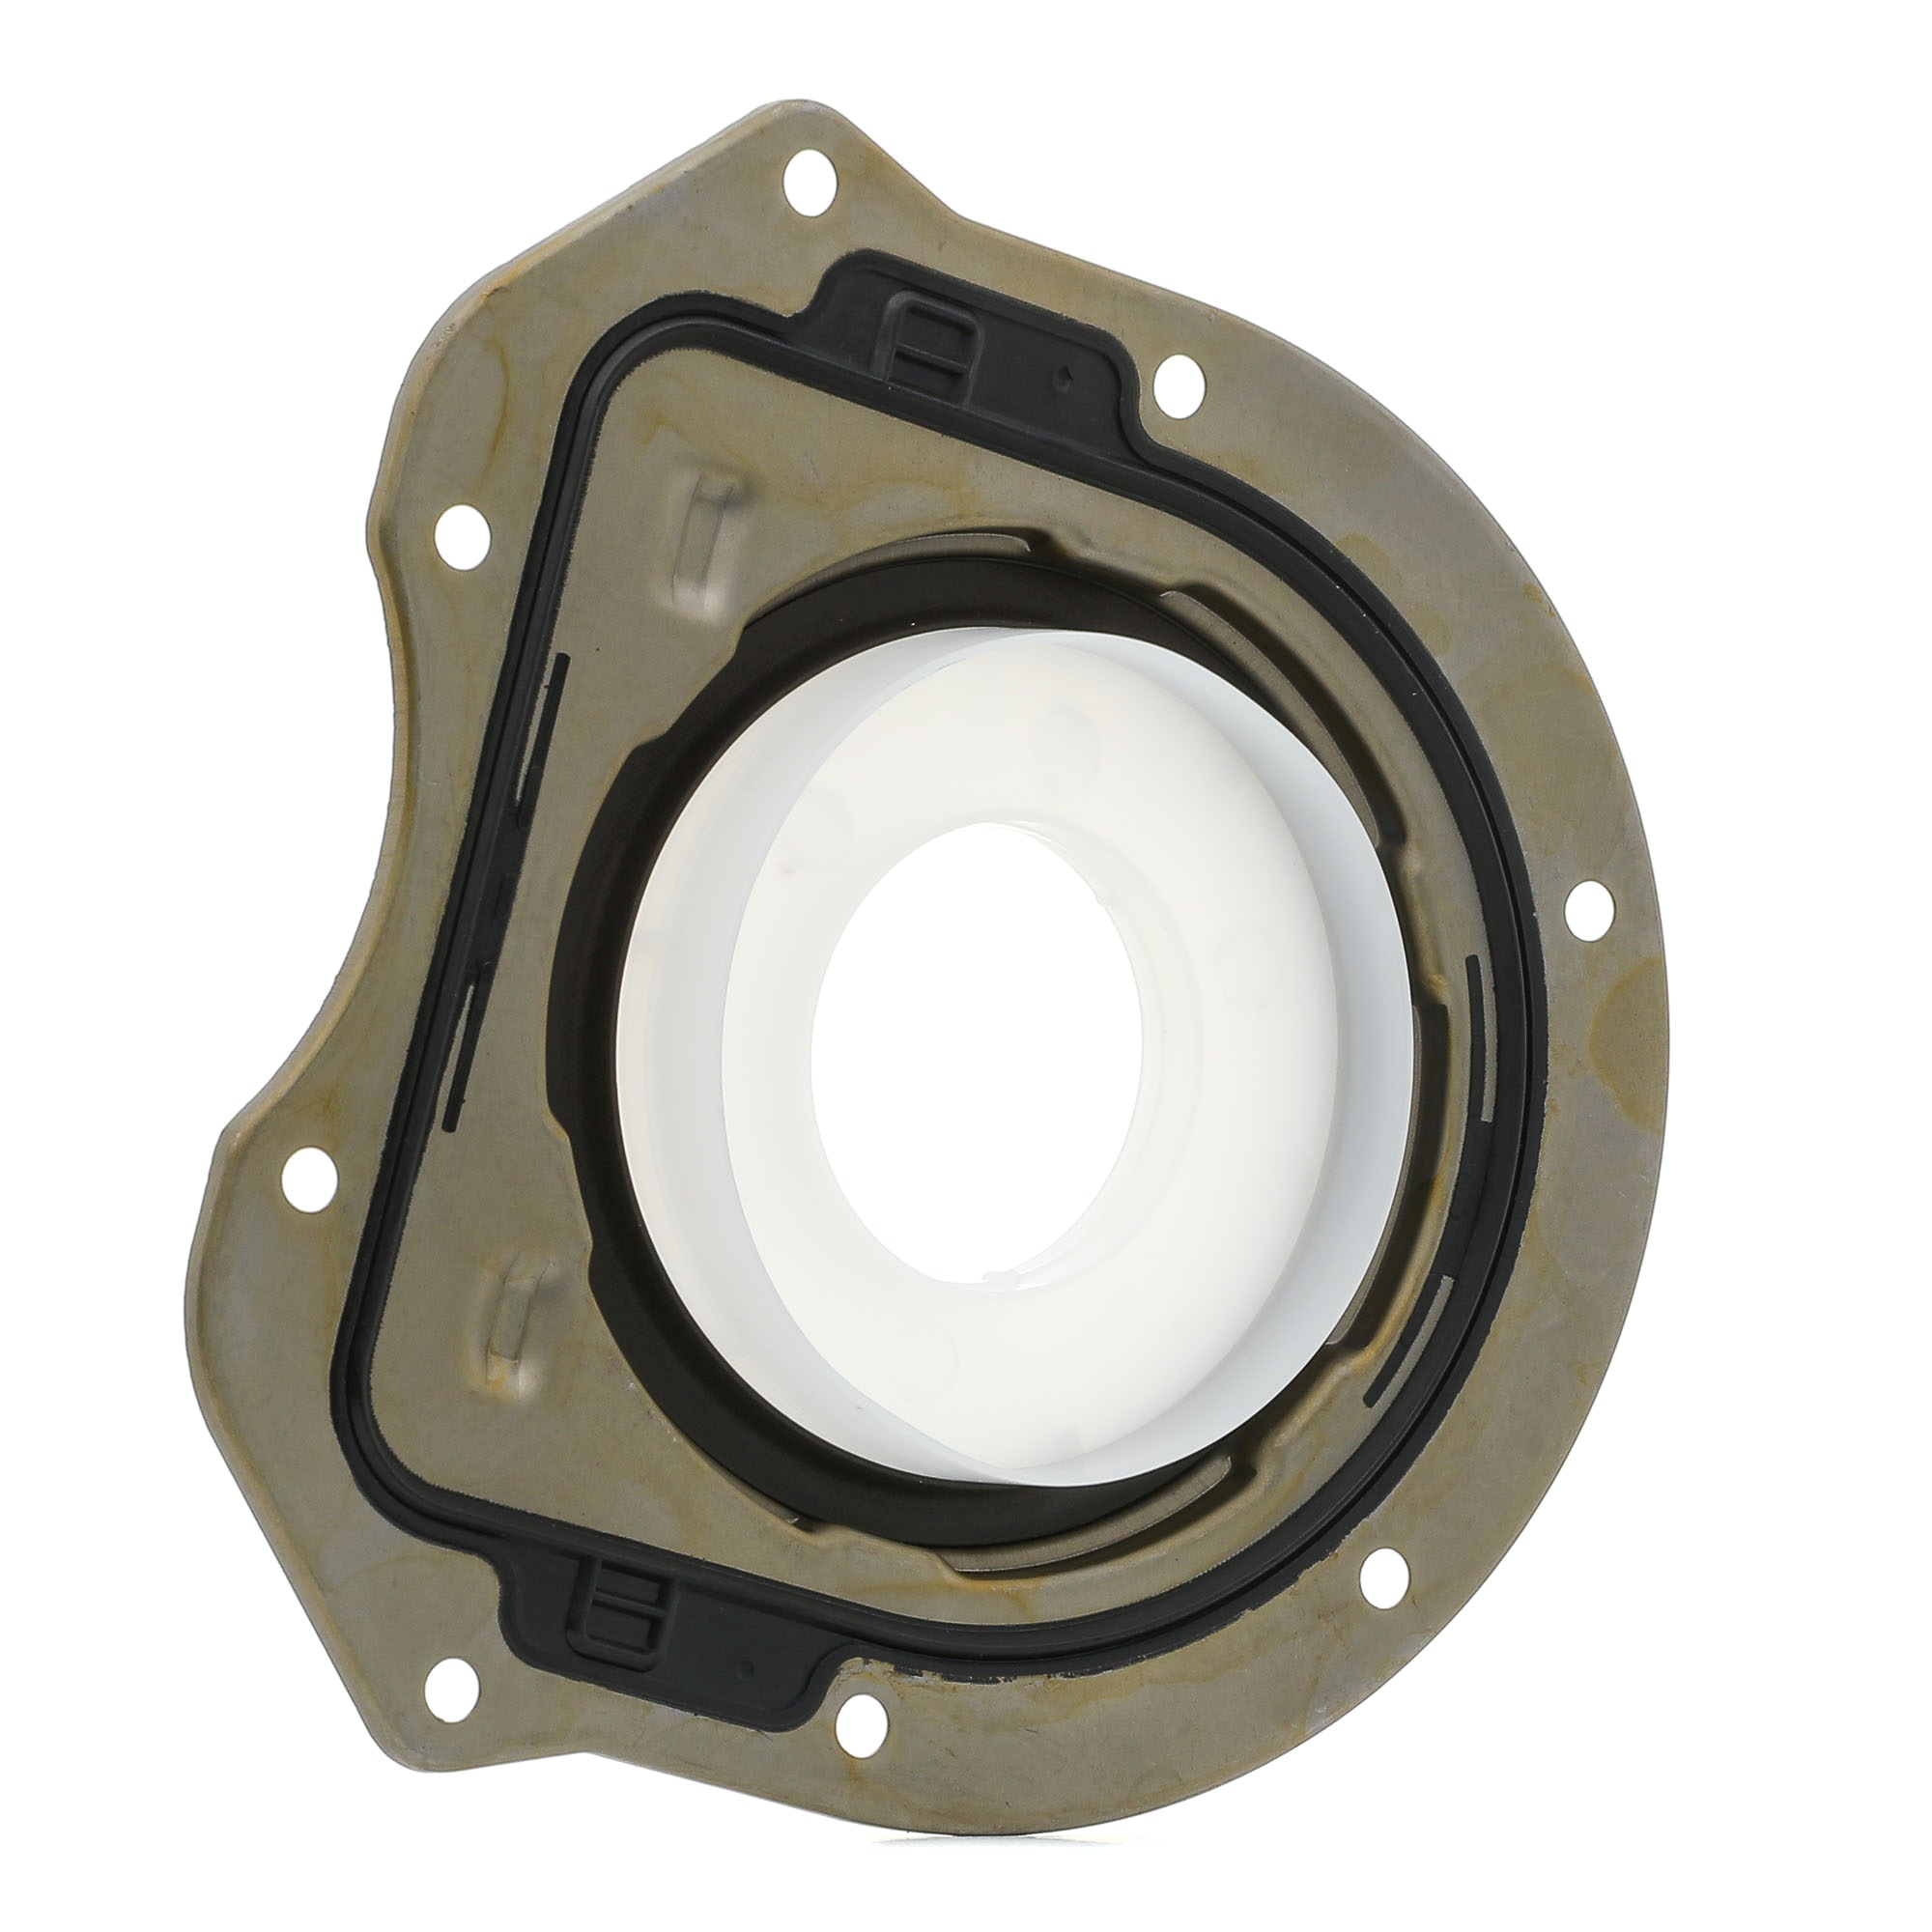 RIDEX 572S0029 Crankshaft seal with mounting sleeves, with flange, transmission sided, PTFE (polytetrafluoroethylene)/ACM (polyacrylate rubber)